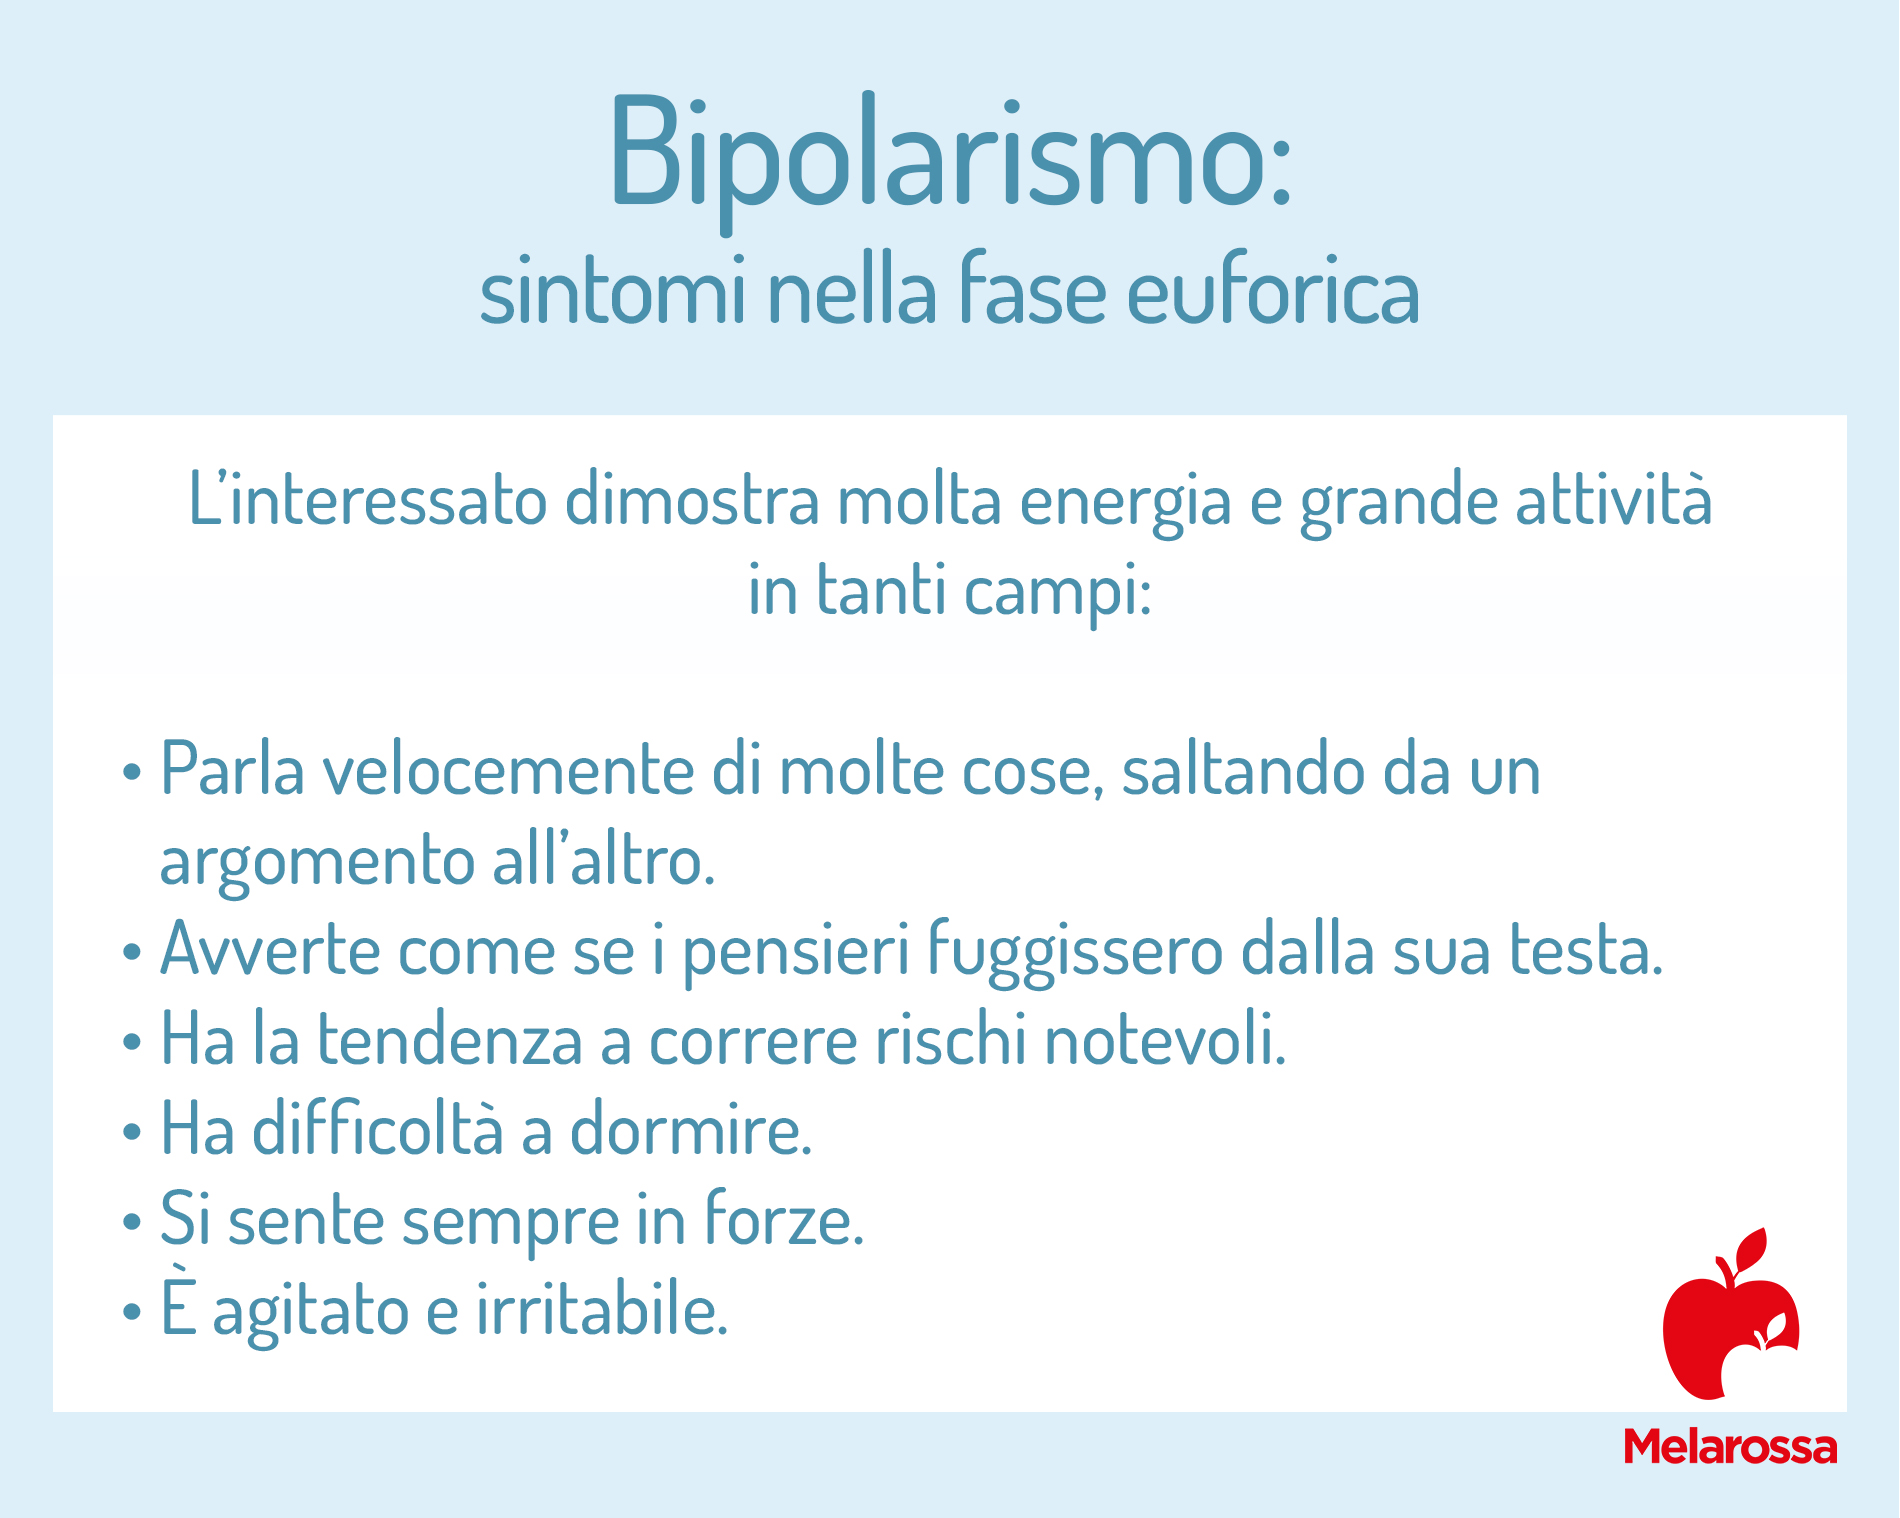 bipolarismo: sintomi nella fase euforica